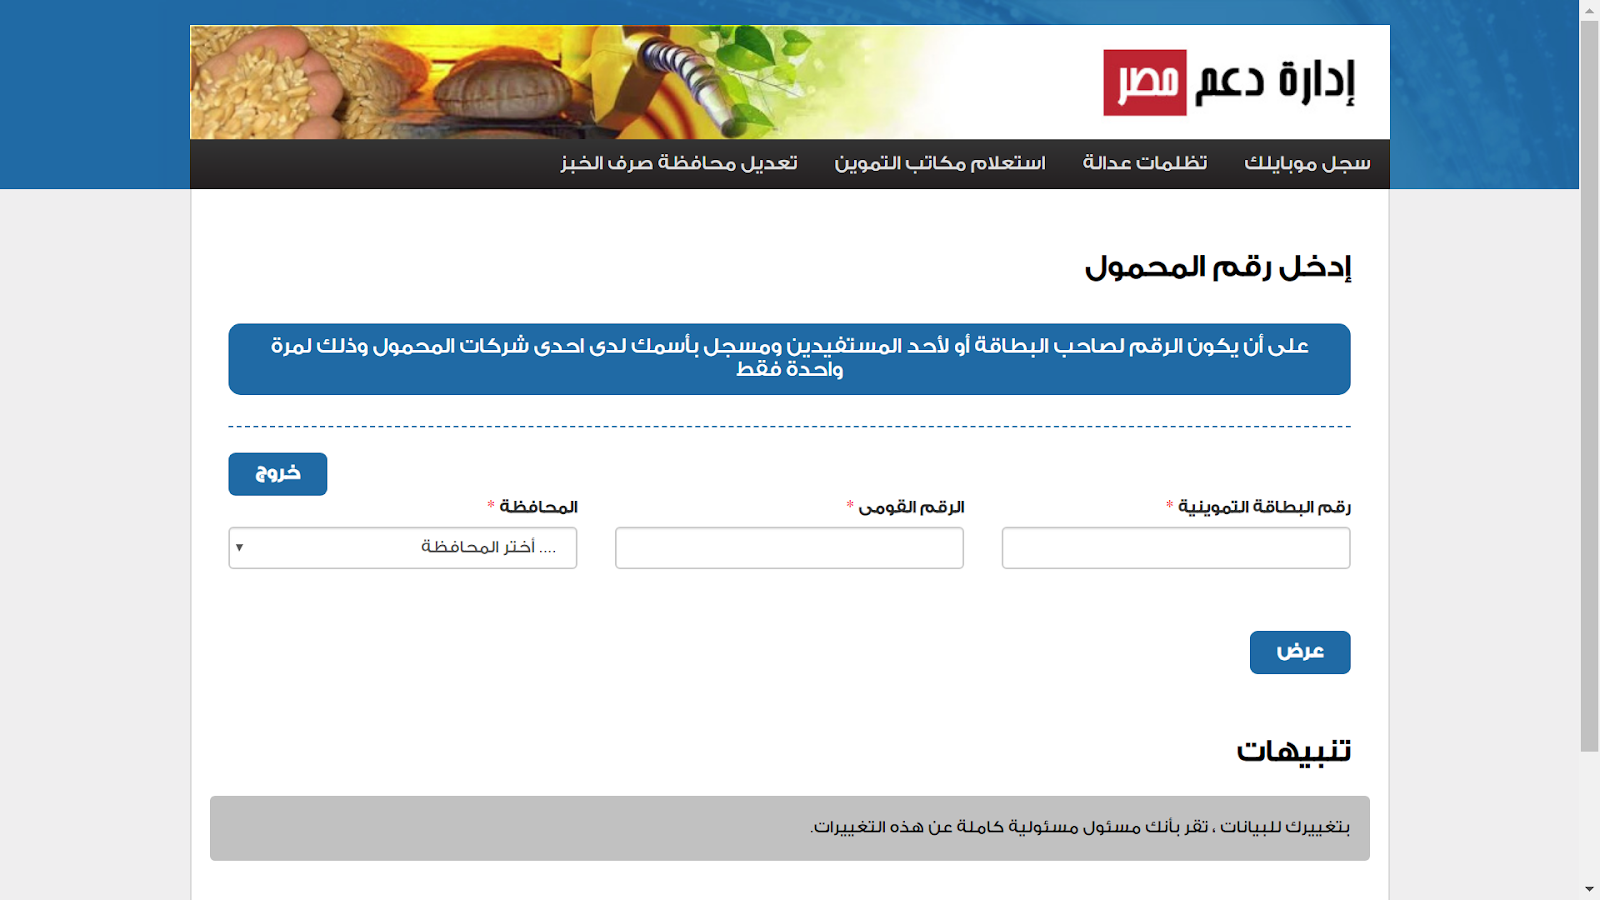 سجل رقم موبايلك موقع دعم مصر لتحديث بطاقات التموين لكافة المستفيدين